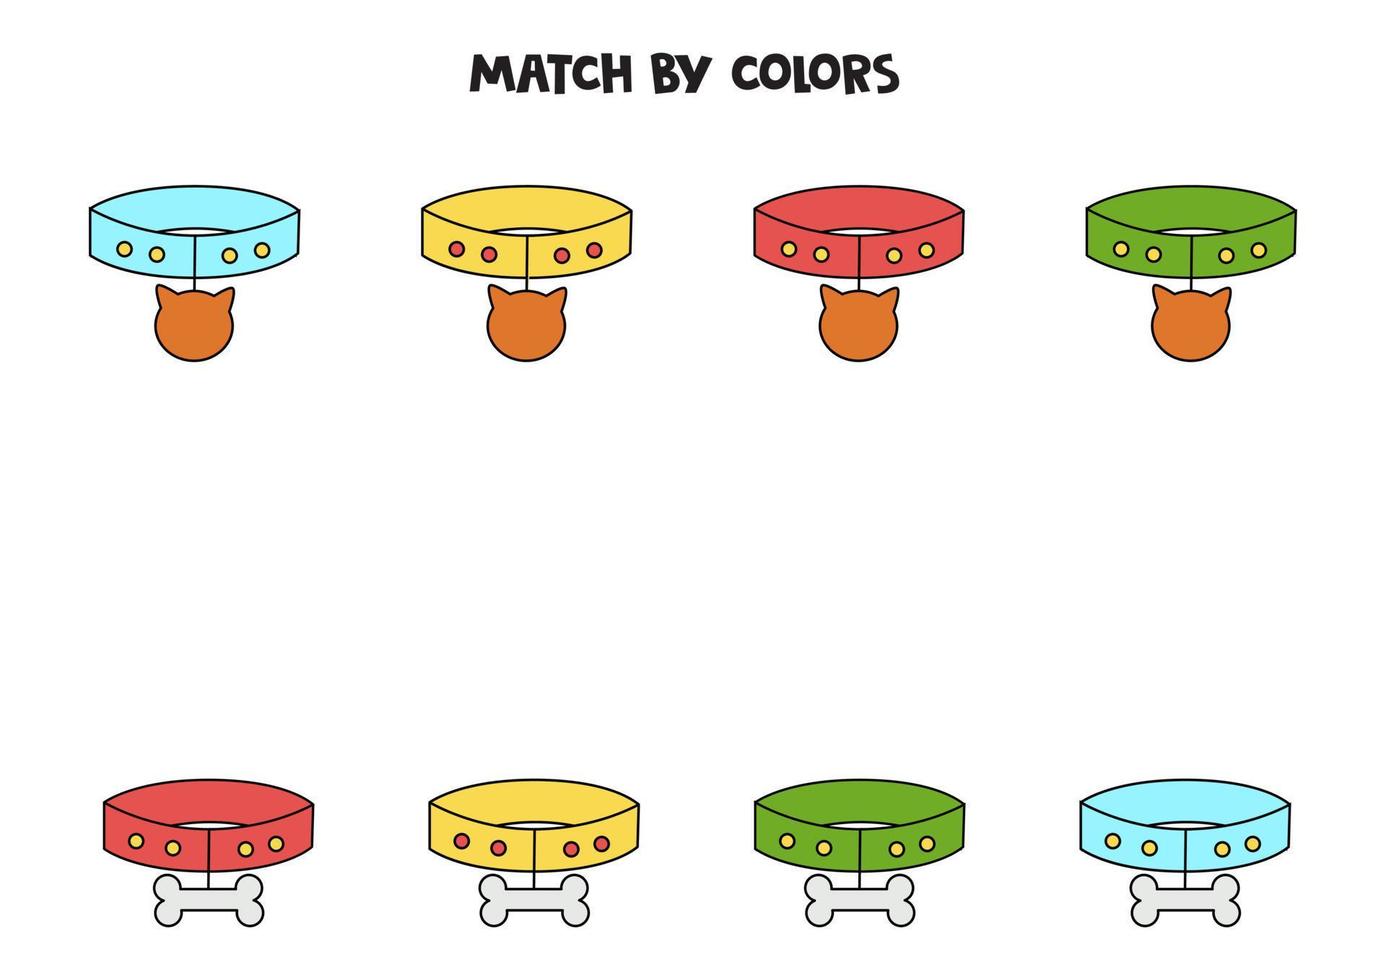 färgmatchningsspel för förskolebarn. matcha djurhalsband efter färger. vektor